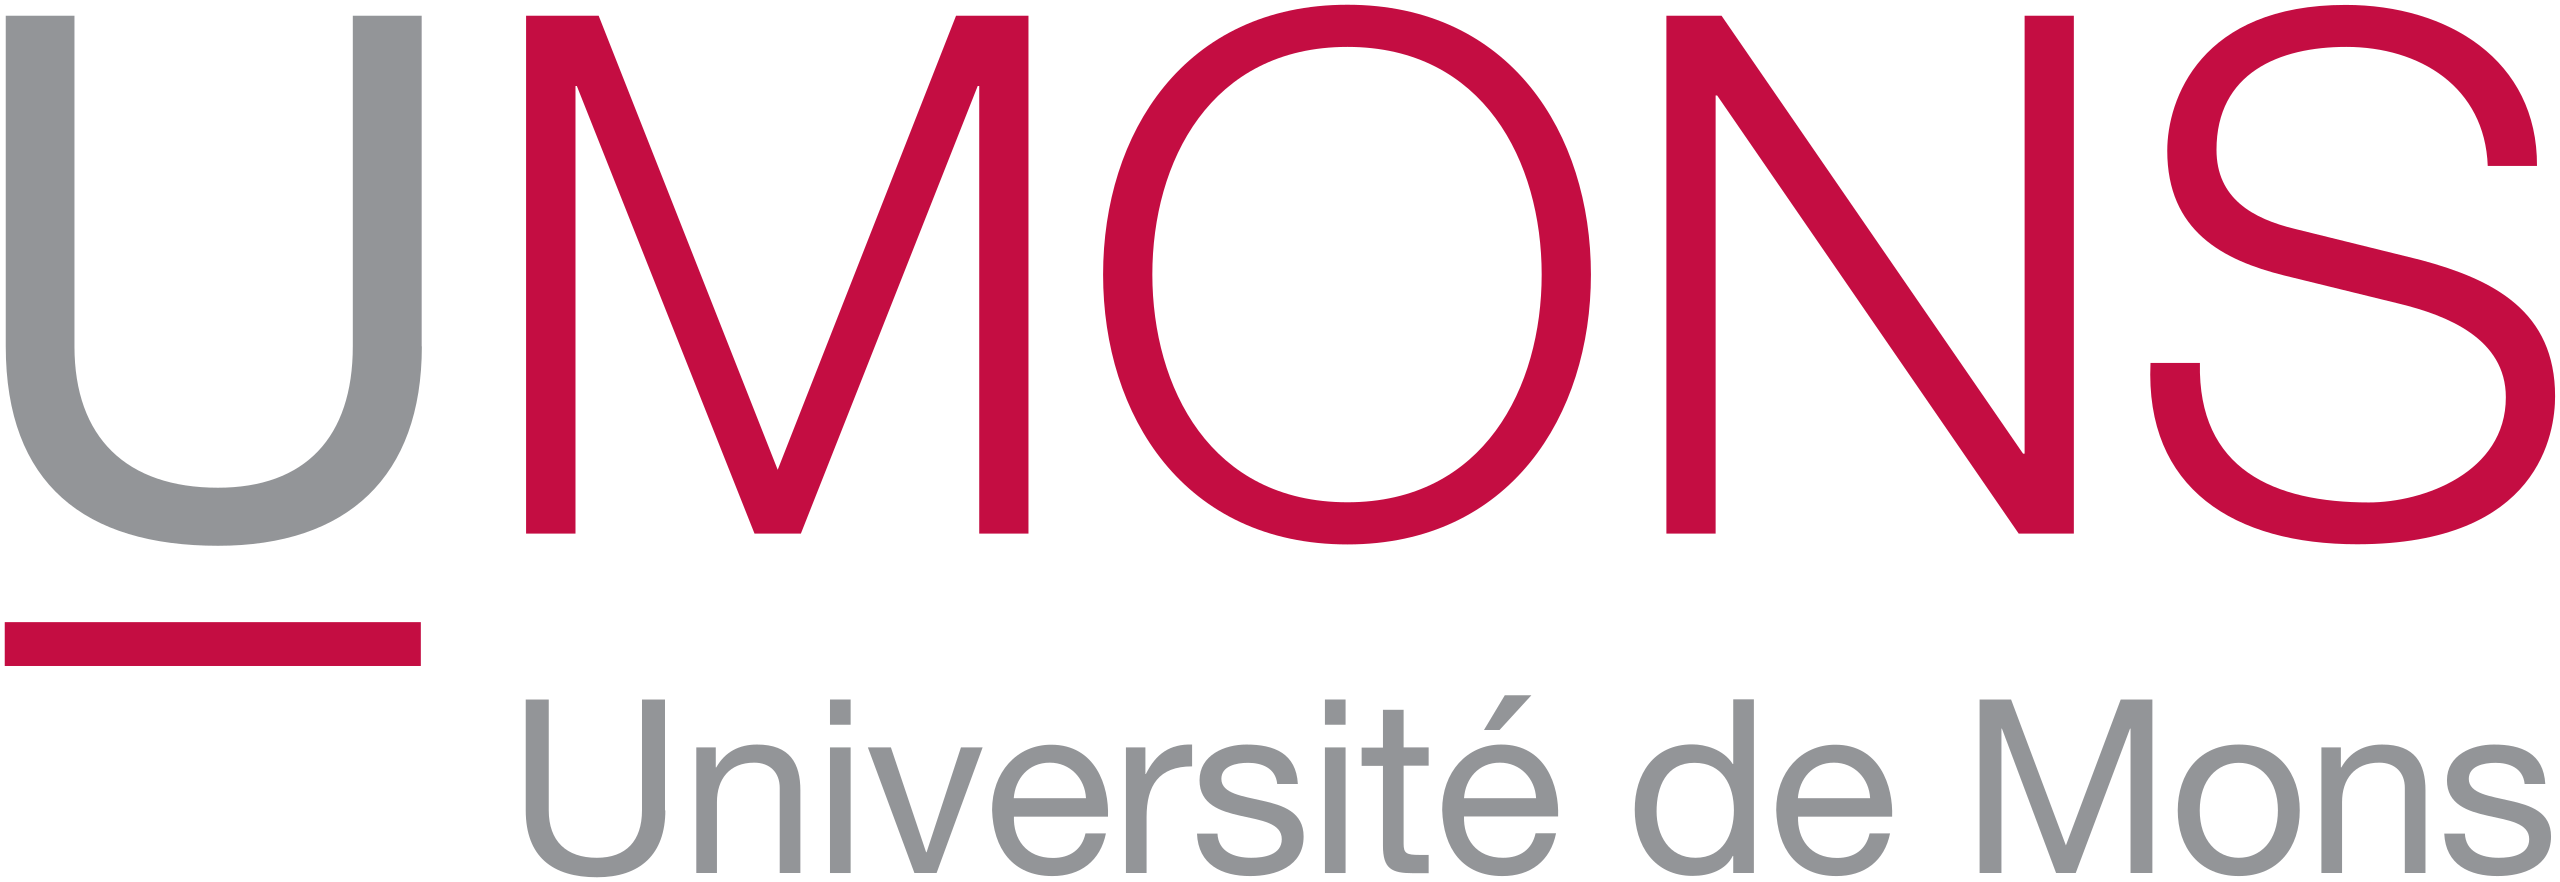 Logo UMons - Université de Mons